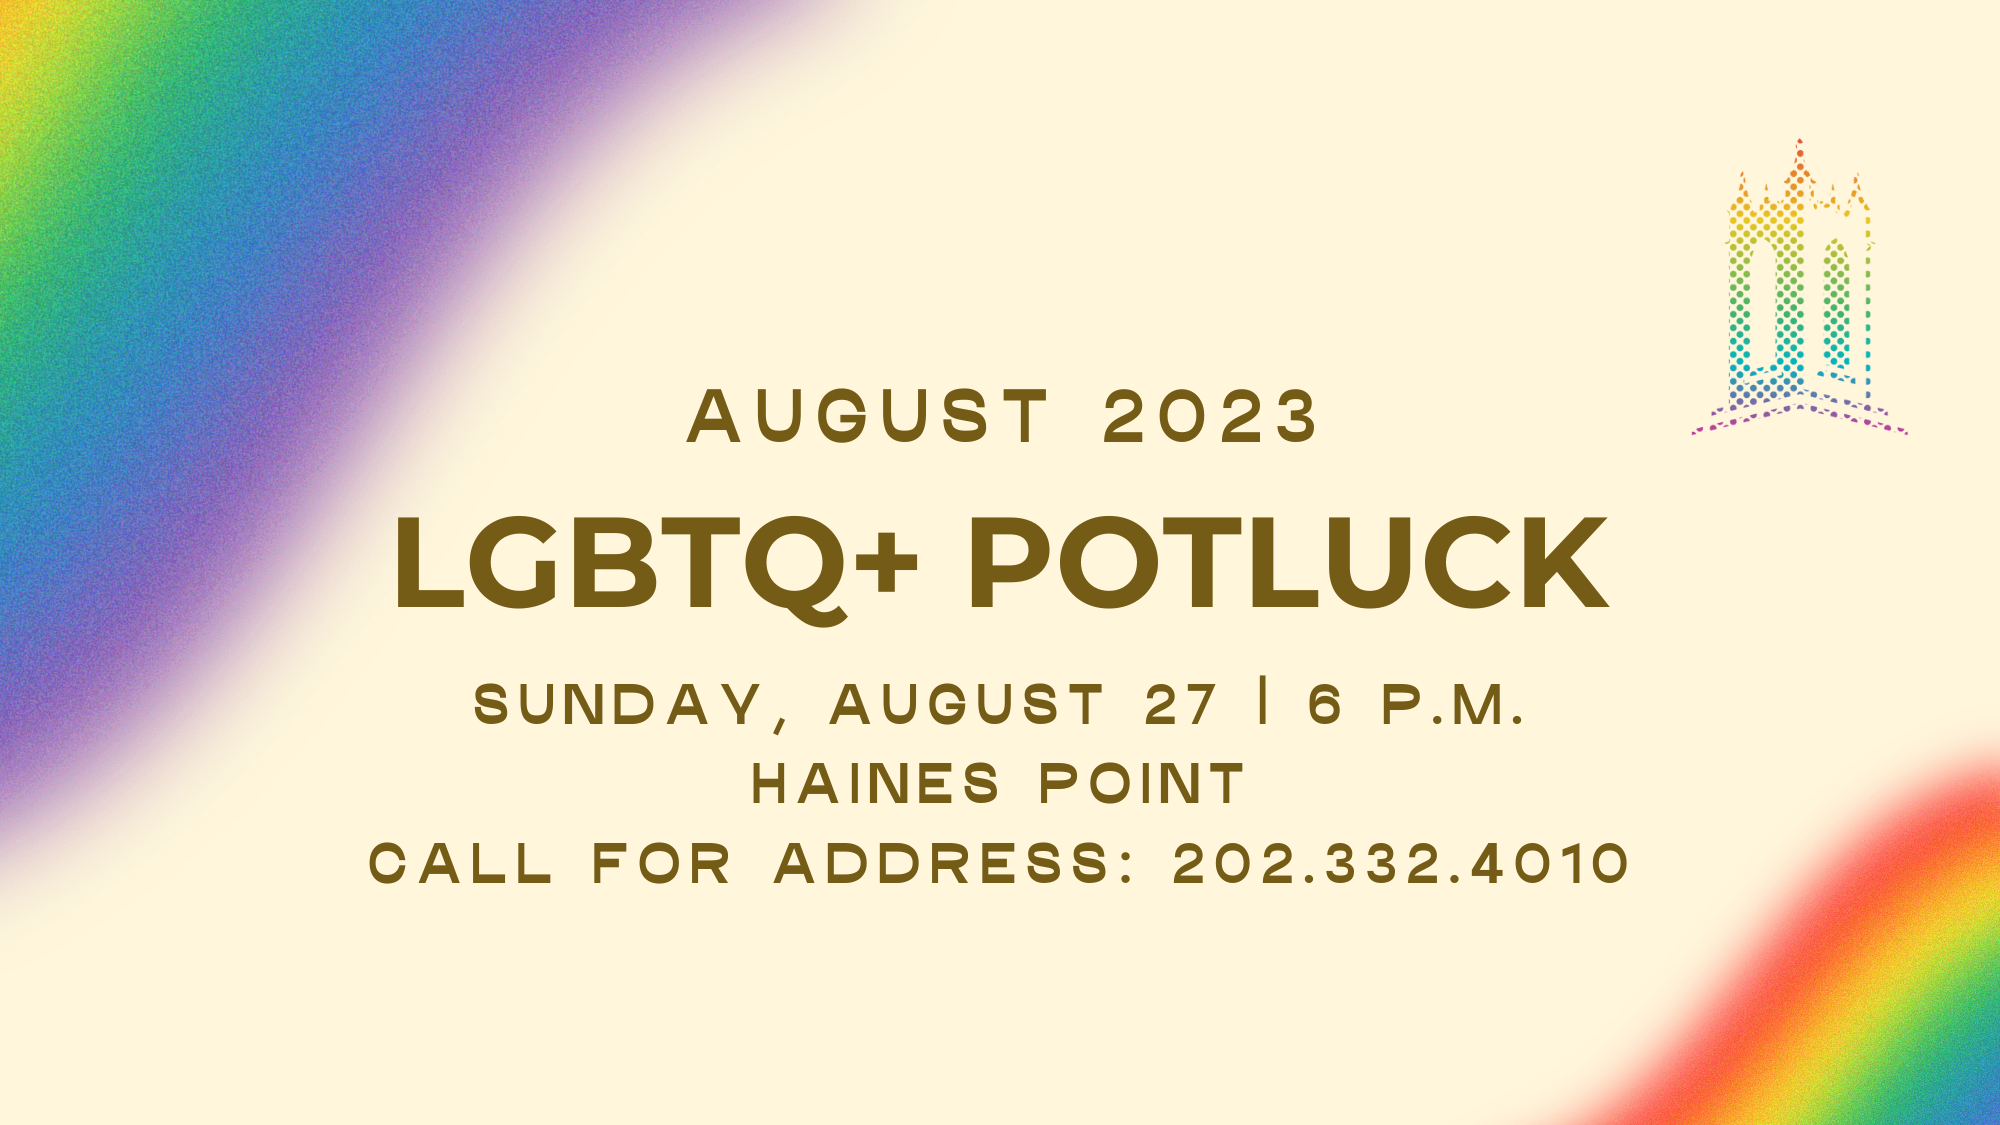 LGBTQ+ Potluck